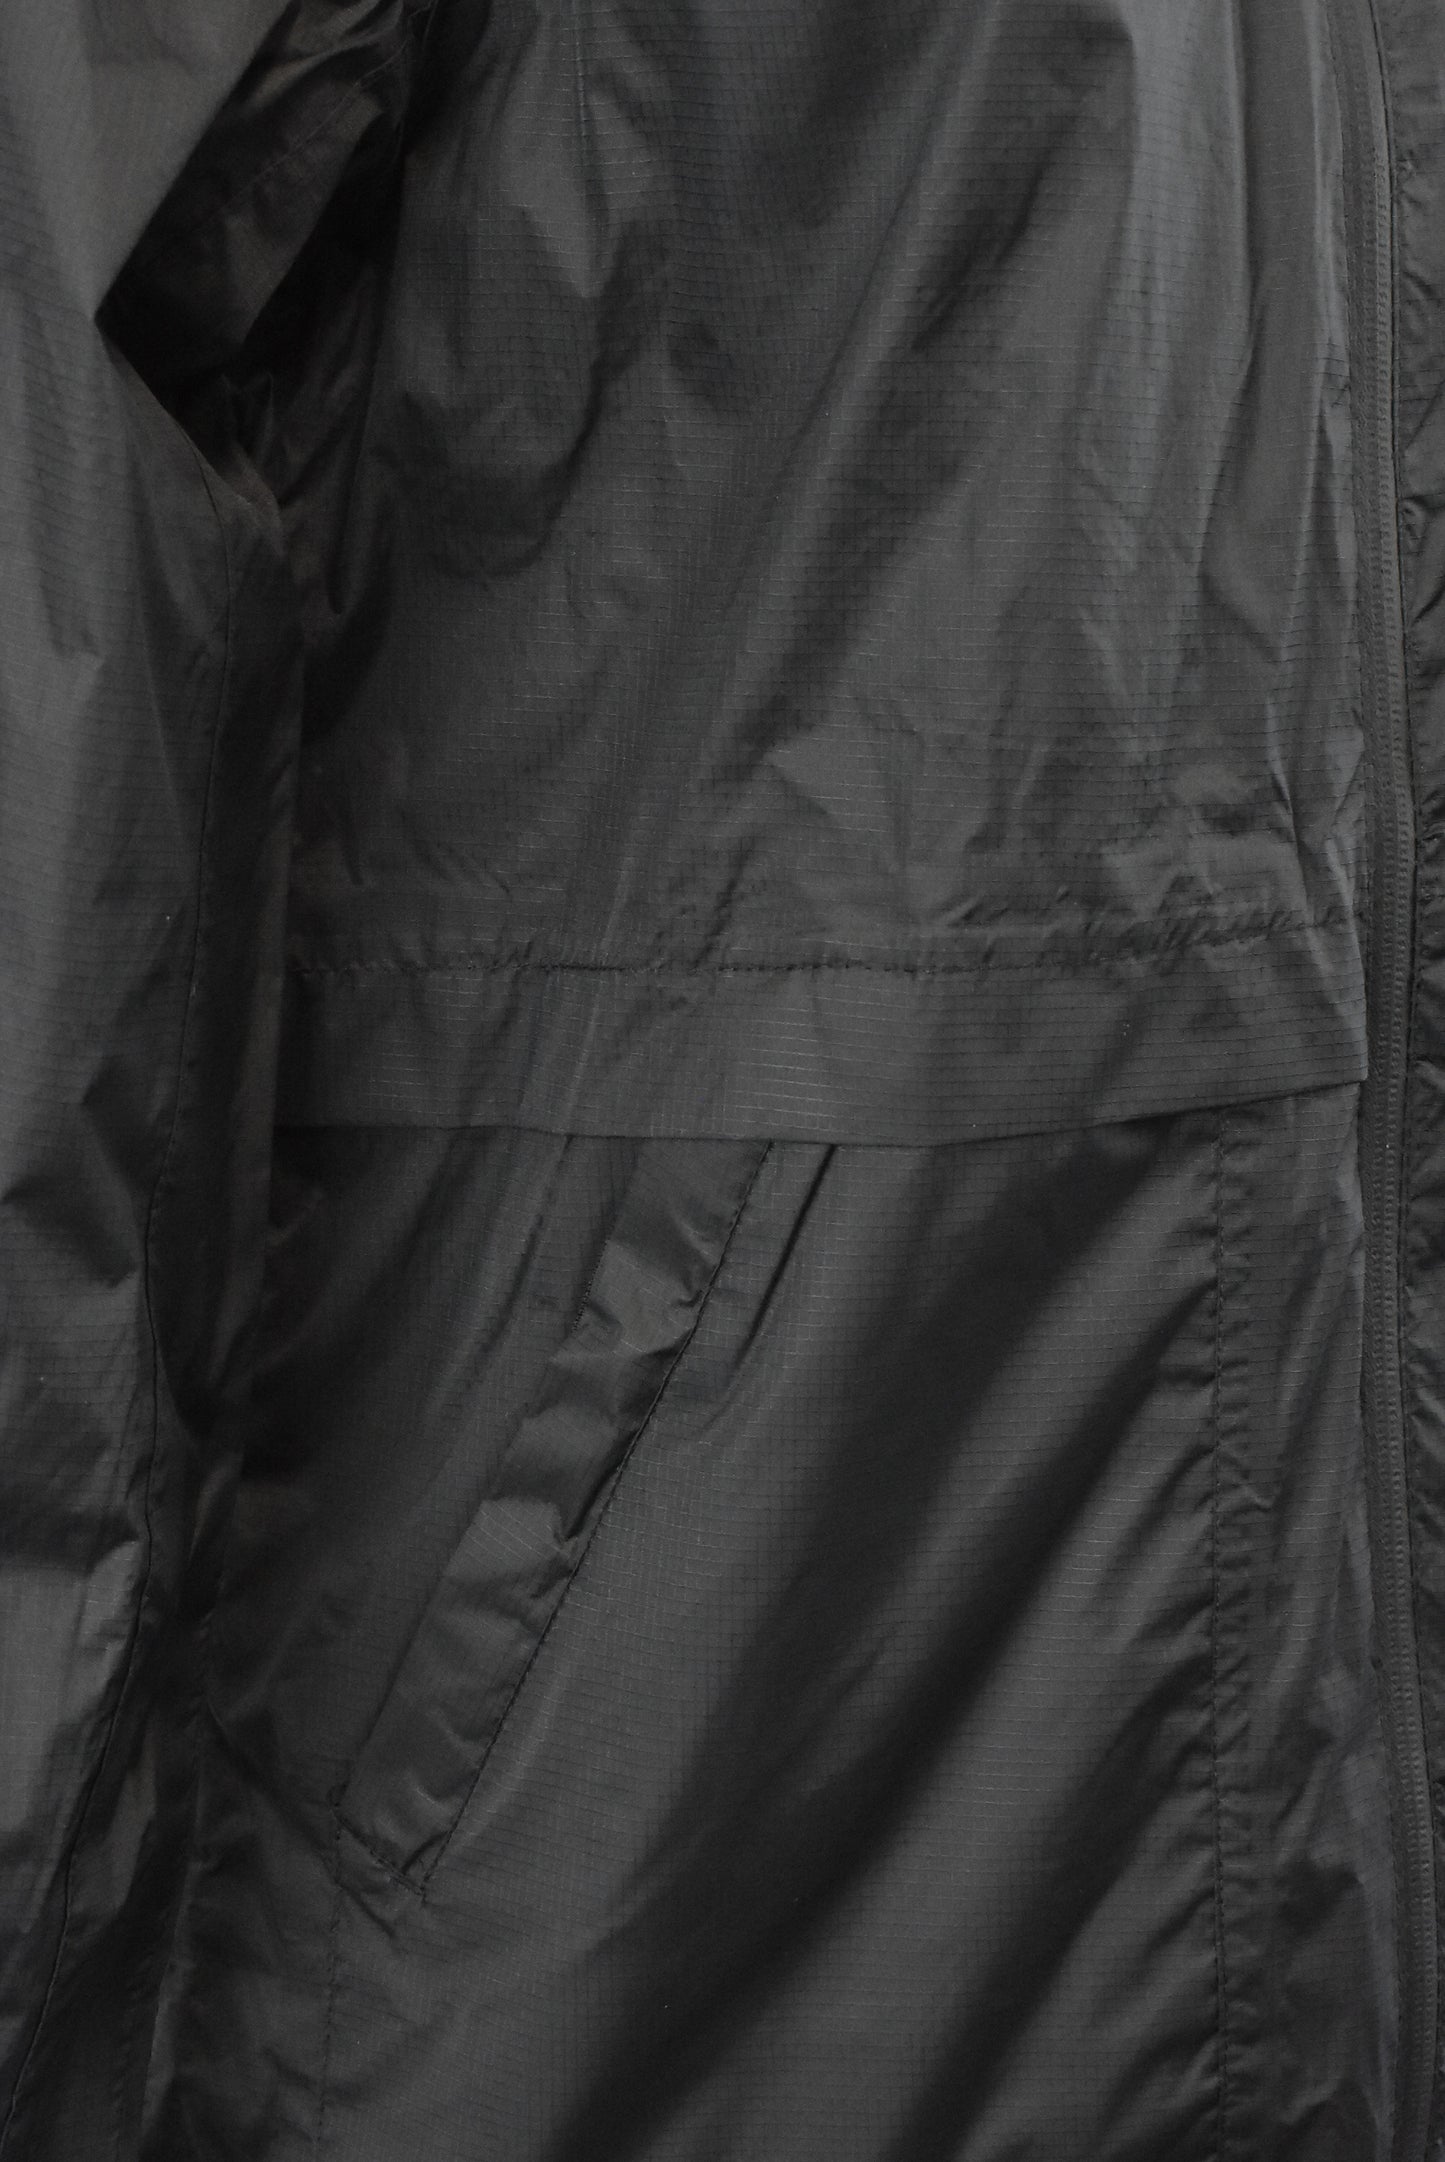 Mountain Warehouse rain jacket, 10